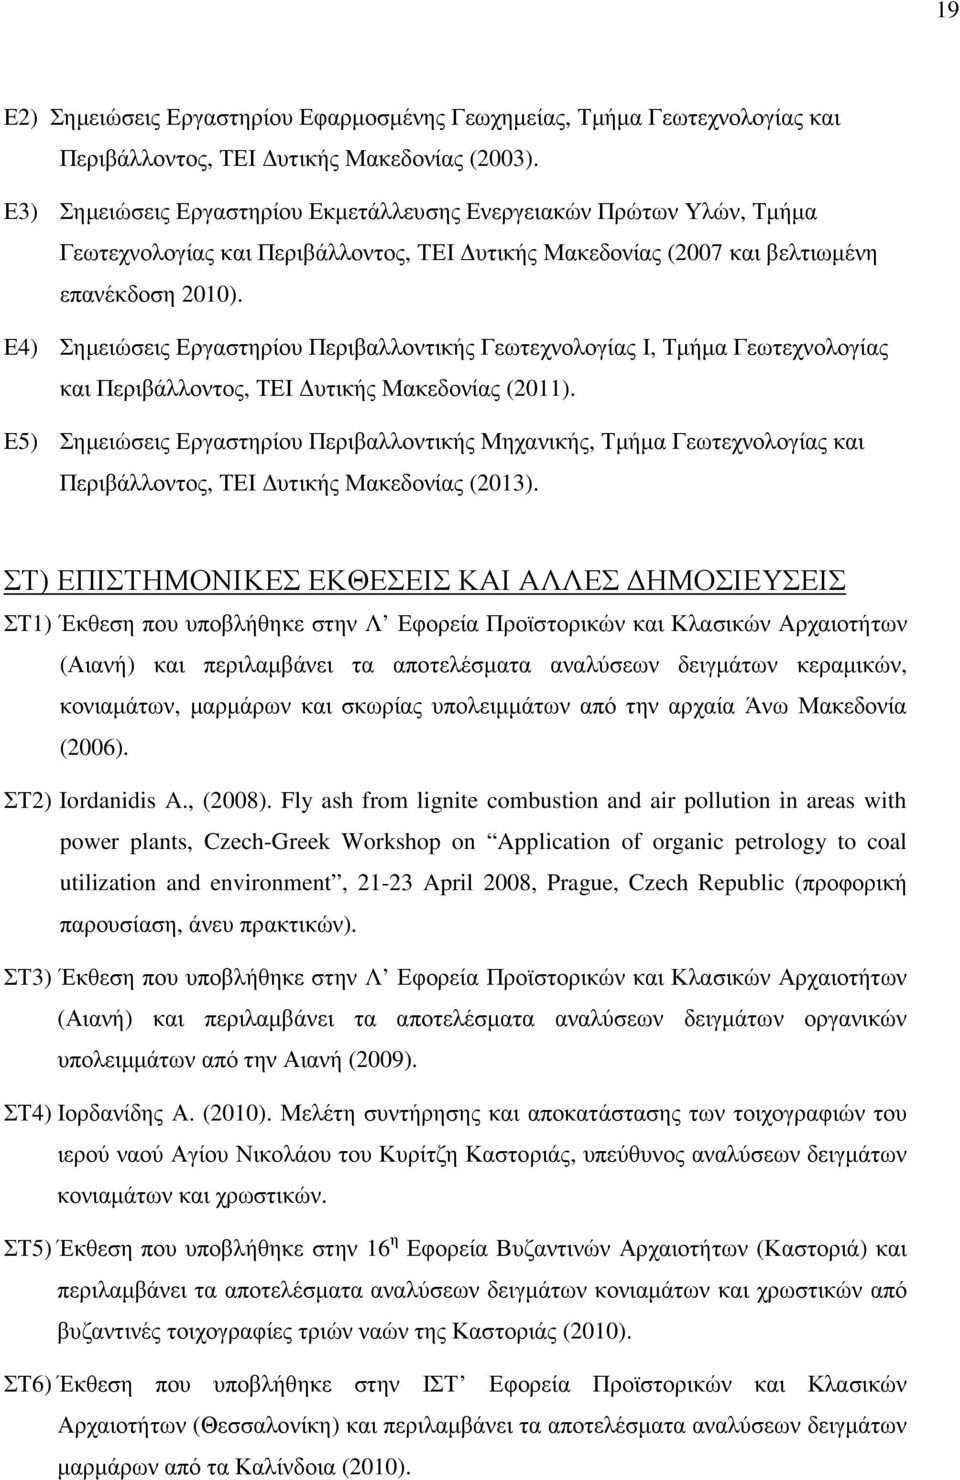 Ε4) Σηµειώσεις Εργαστηρίου Περιβαλλοντικής Γεωτεχνολογίας Ι, Τµήµα Γεωτεχνολογίας και Περιβάλλοντος, ΤΕΙ υτικής Μακεδονίας (2011).